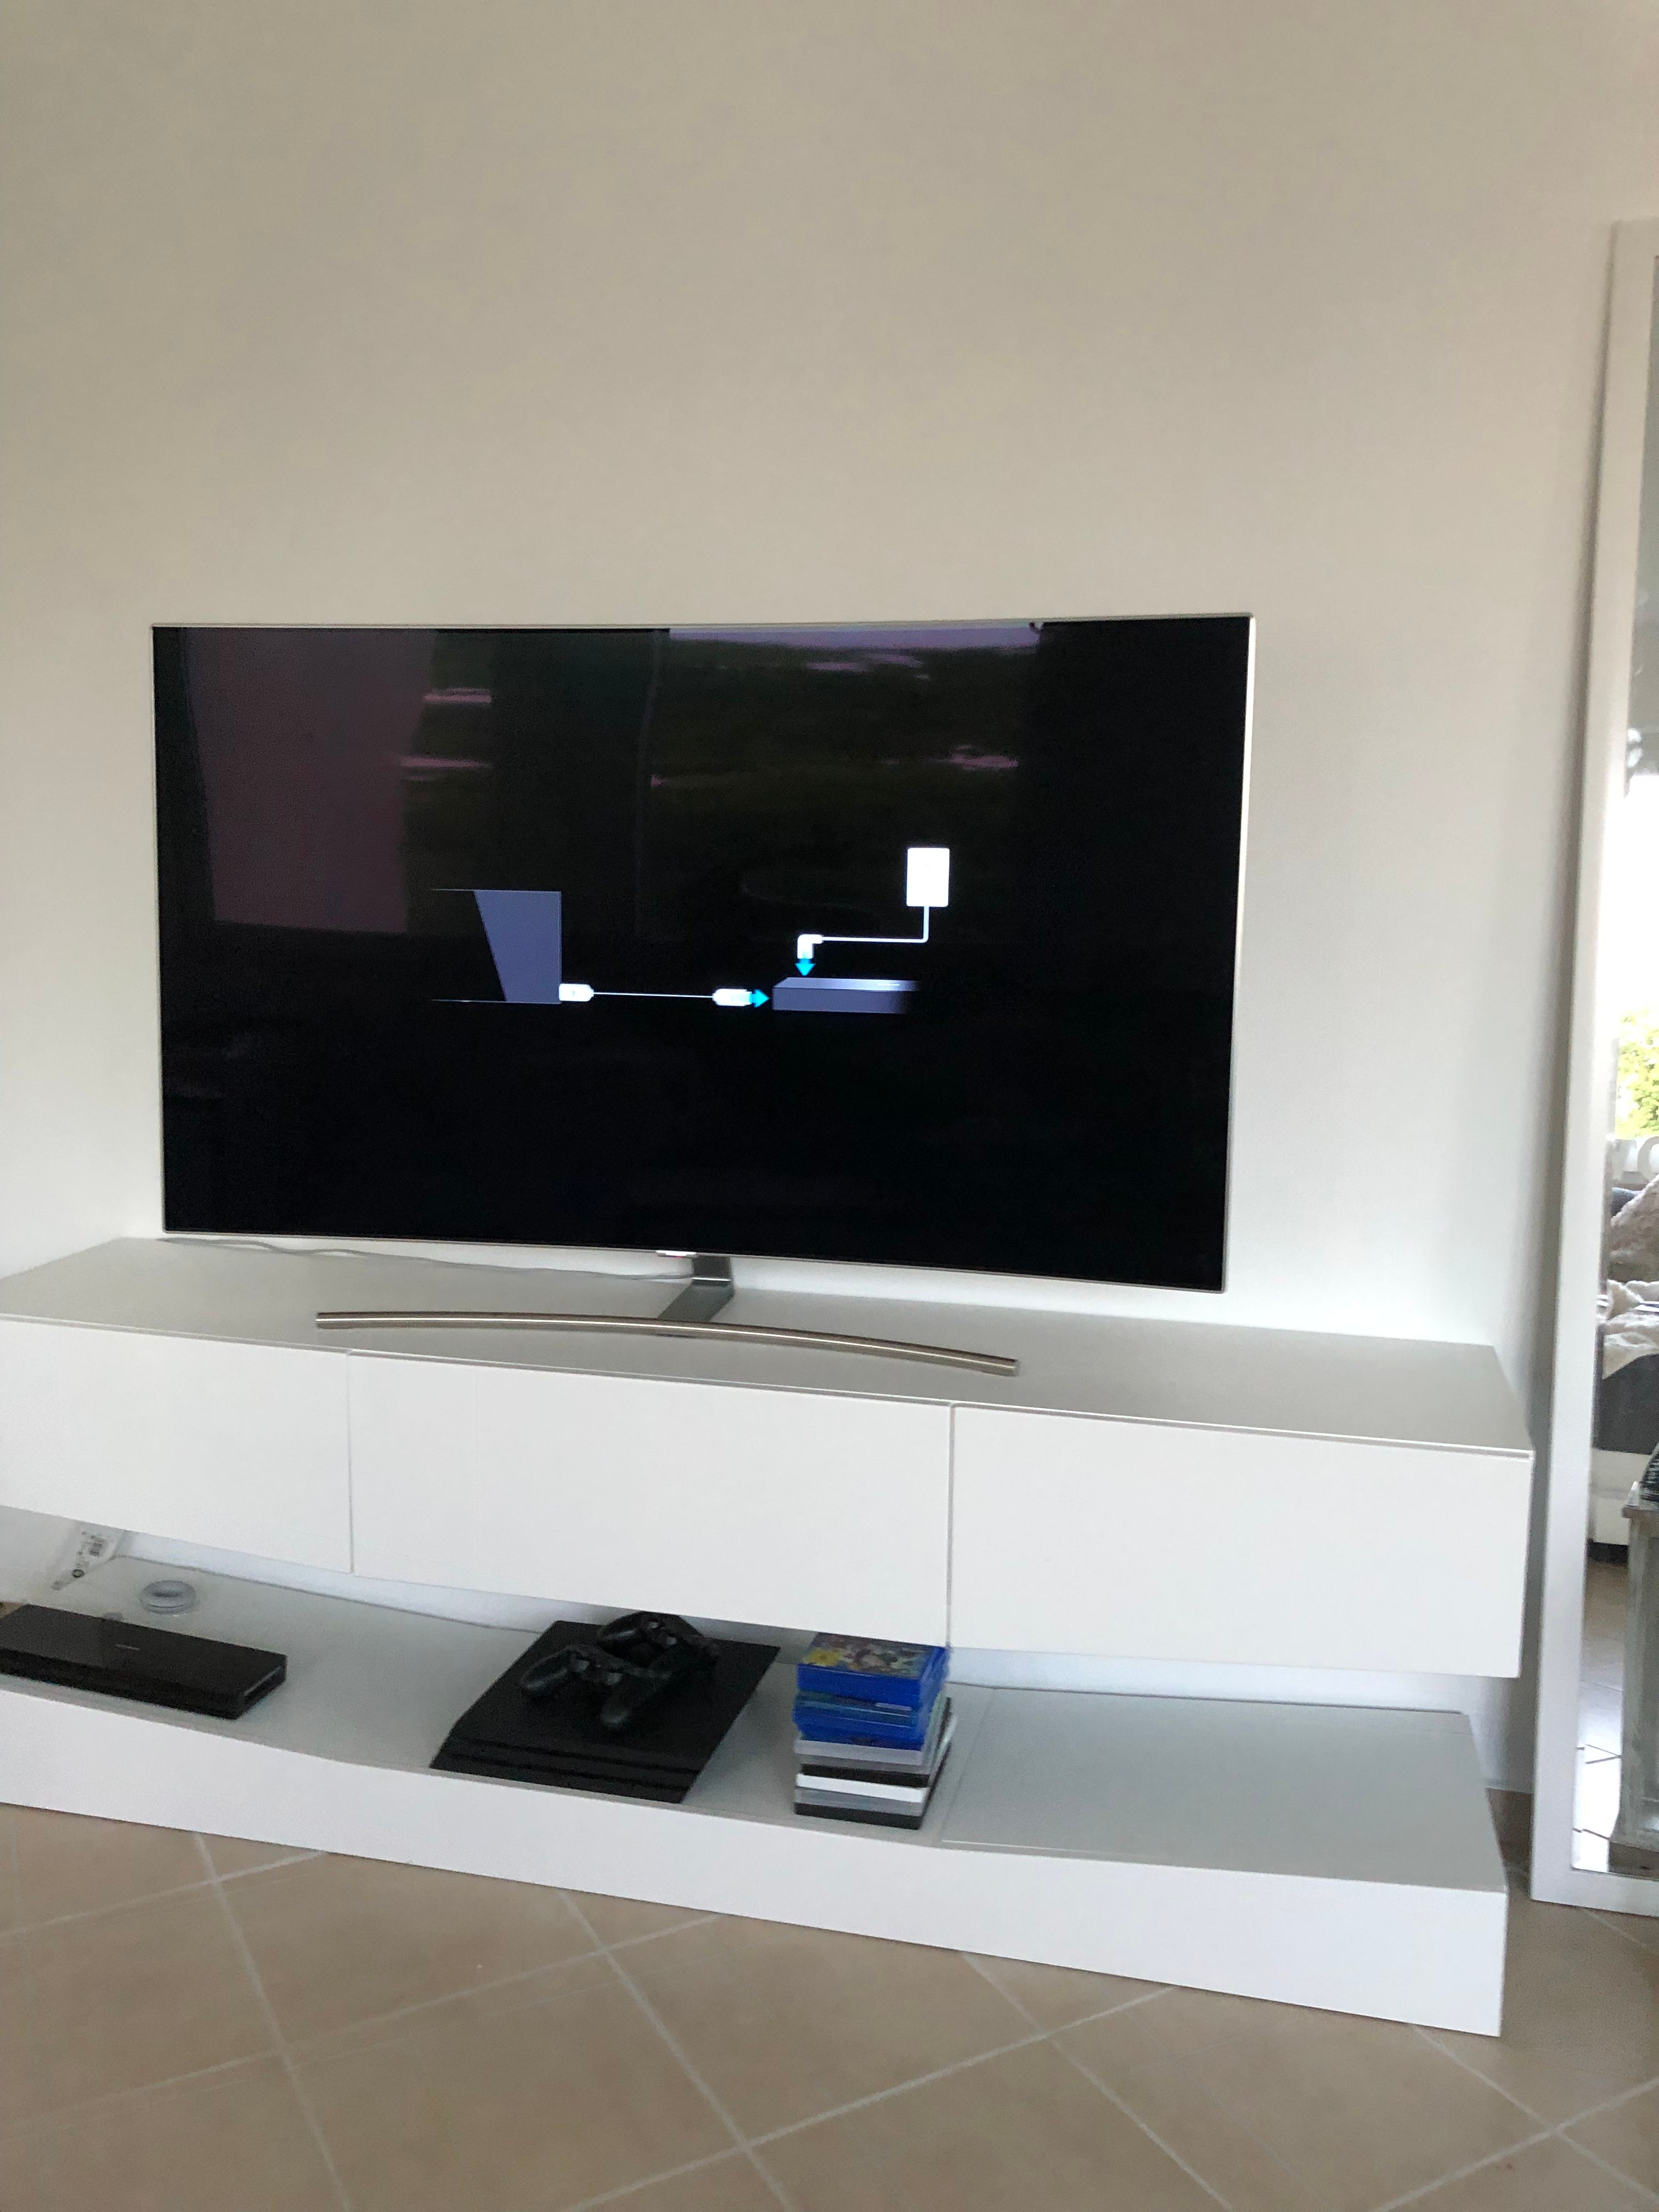 Fernseher verbindet sich nicht mit der Connect Box - Samsung Community